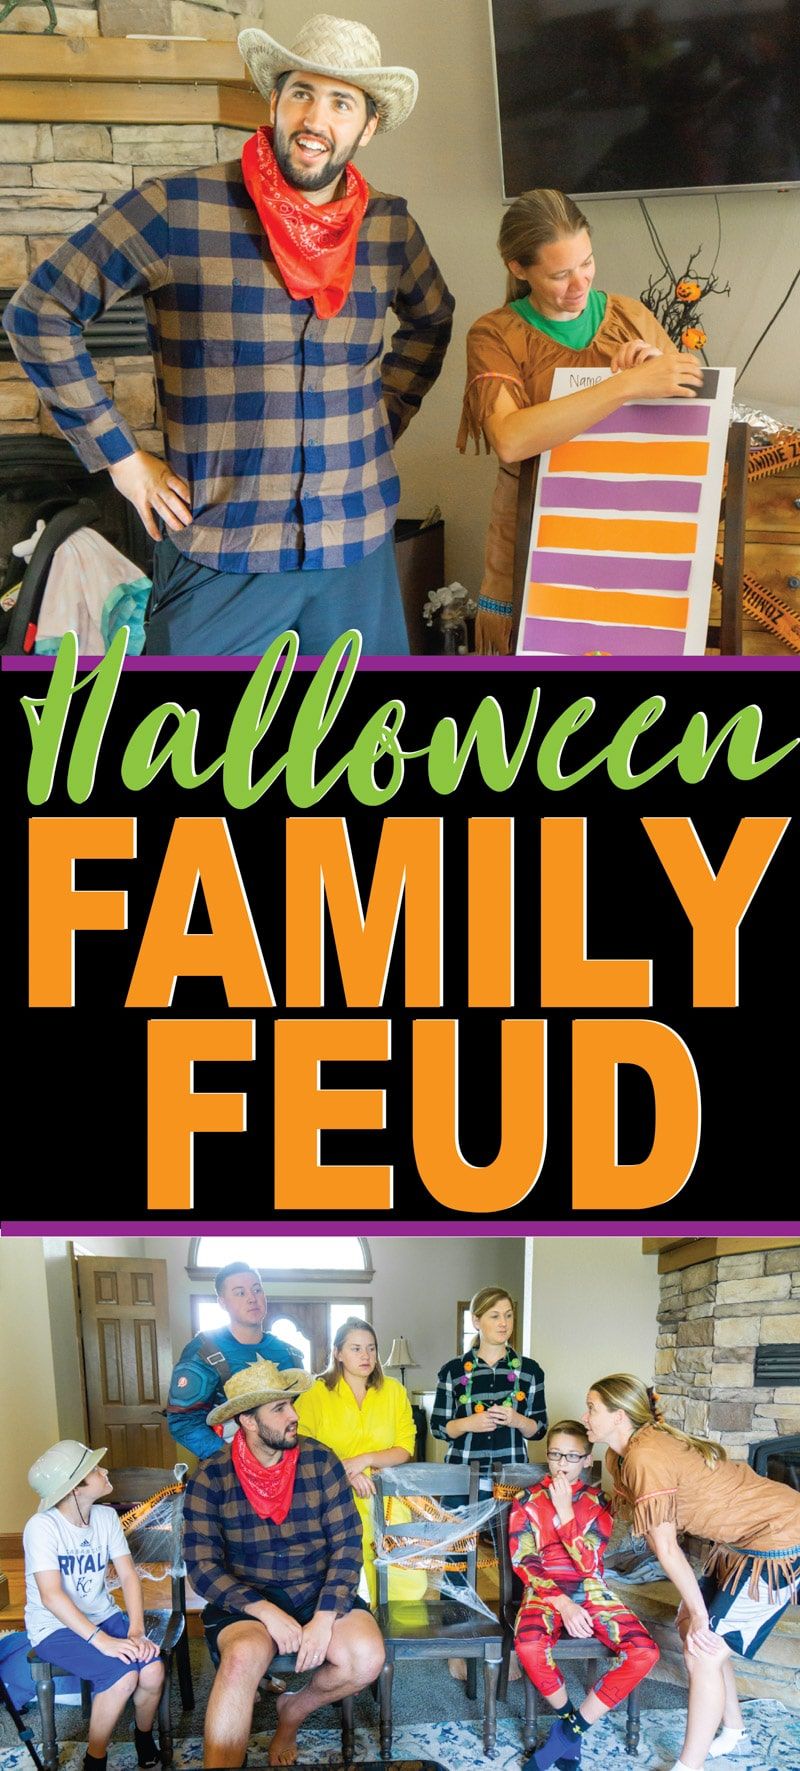 DIY Halloween ģimenes naids komplektā ar smieklīgiem jautājumiem bērniem un pieaugušajiem! Ideāli piemērots Halovīna ballītei vai vienkārši Helovīna spēlei, ko spēlēt kopā ar ģimeni! Viena no jautrākajām Helovīna spēlēm tur!